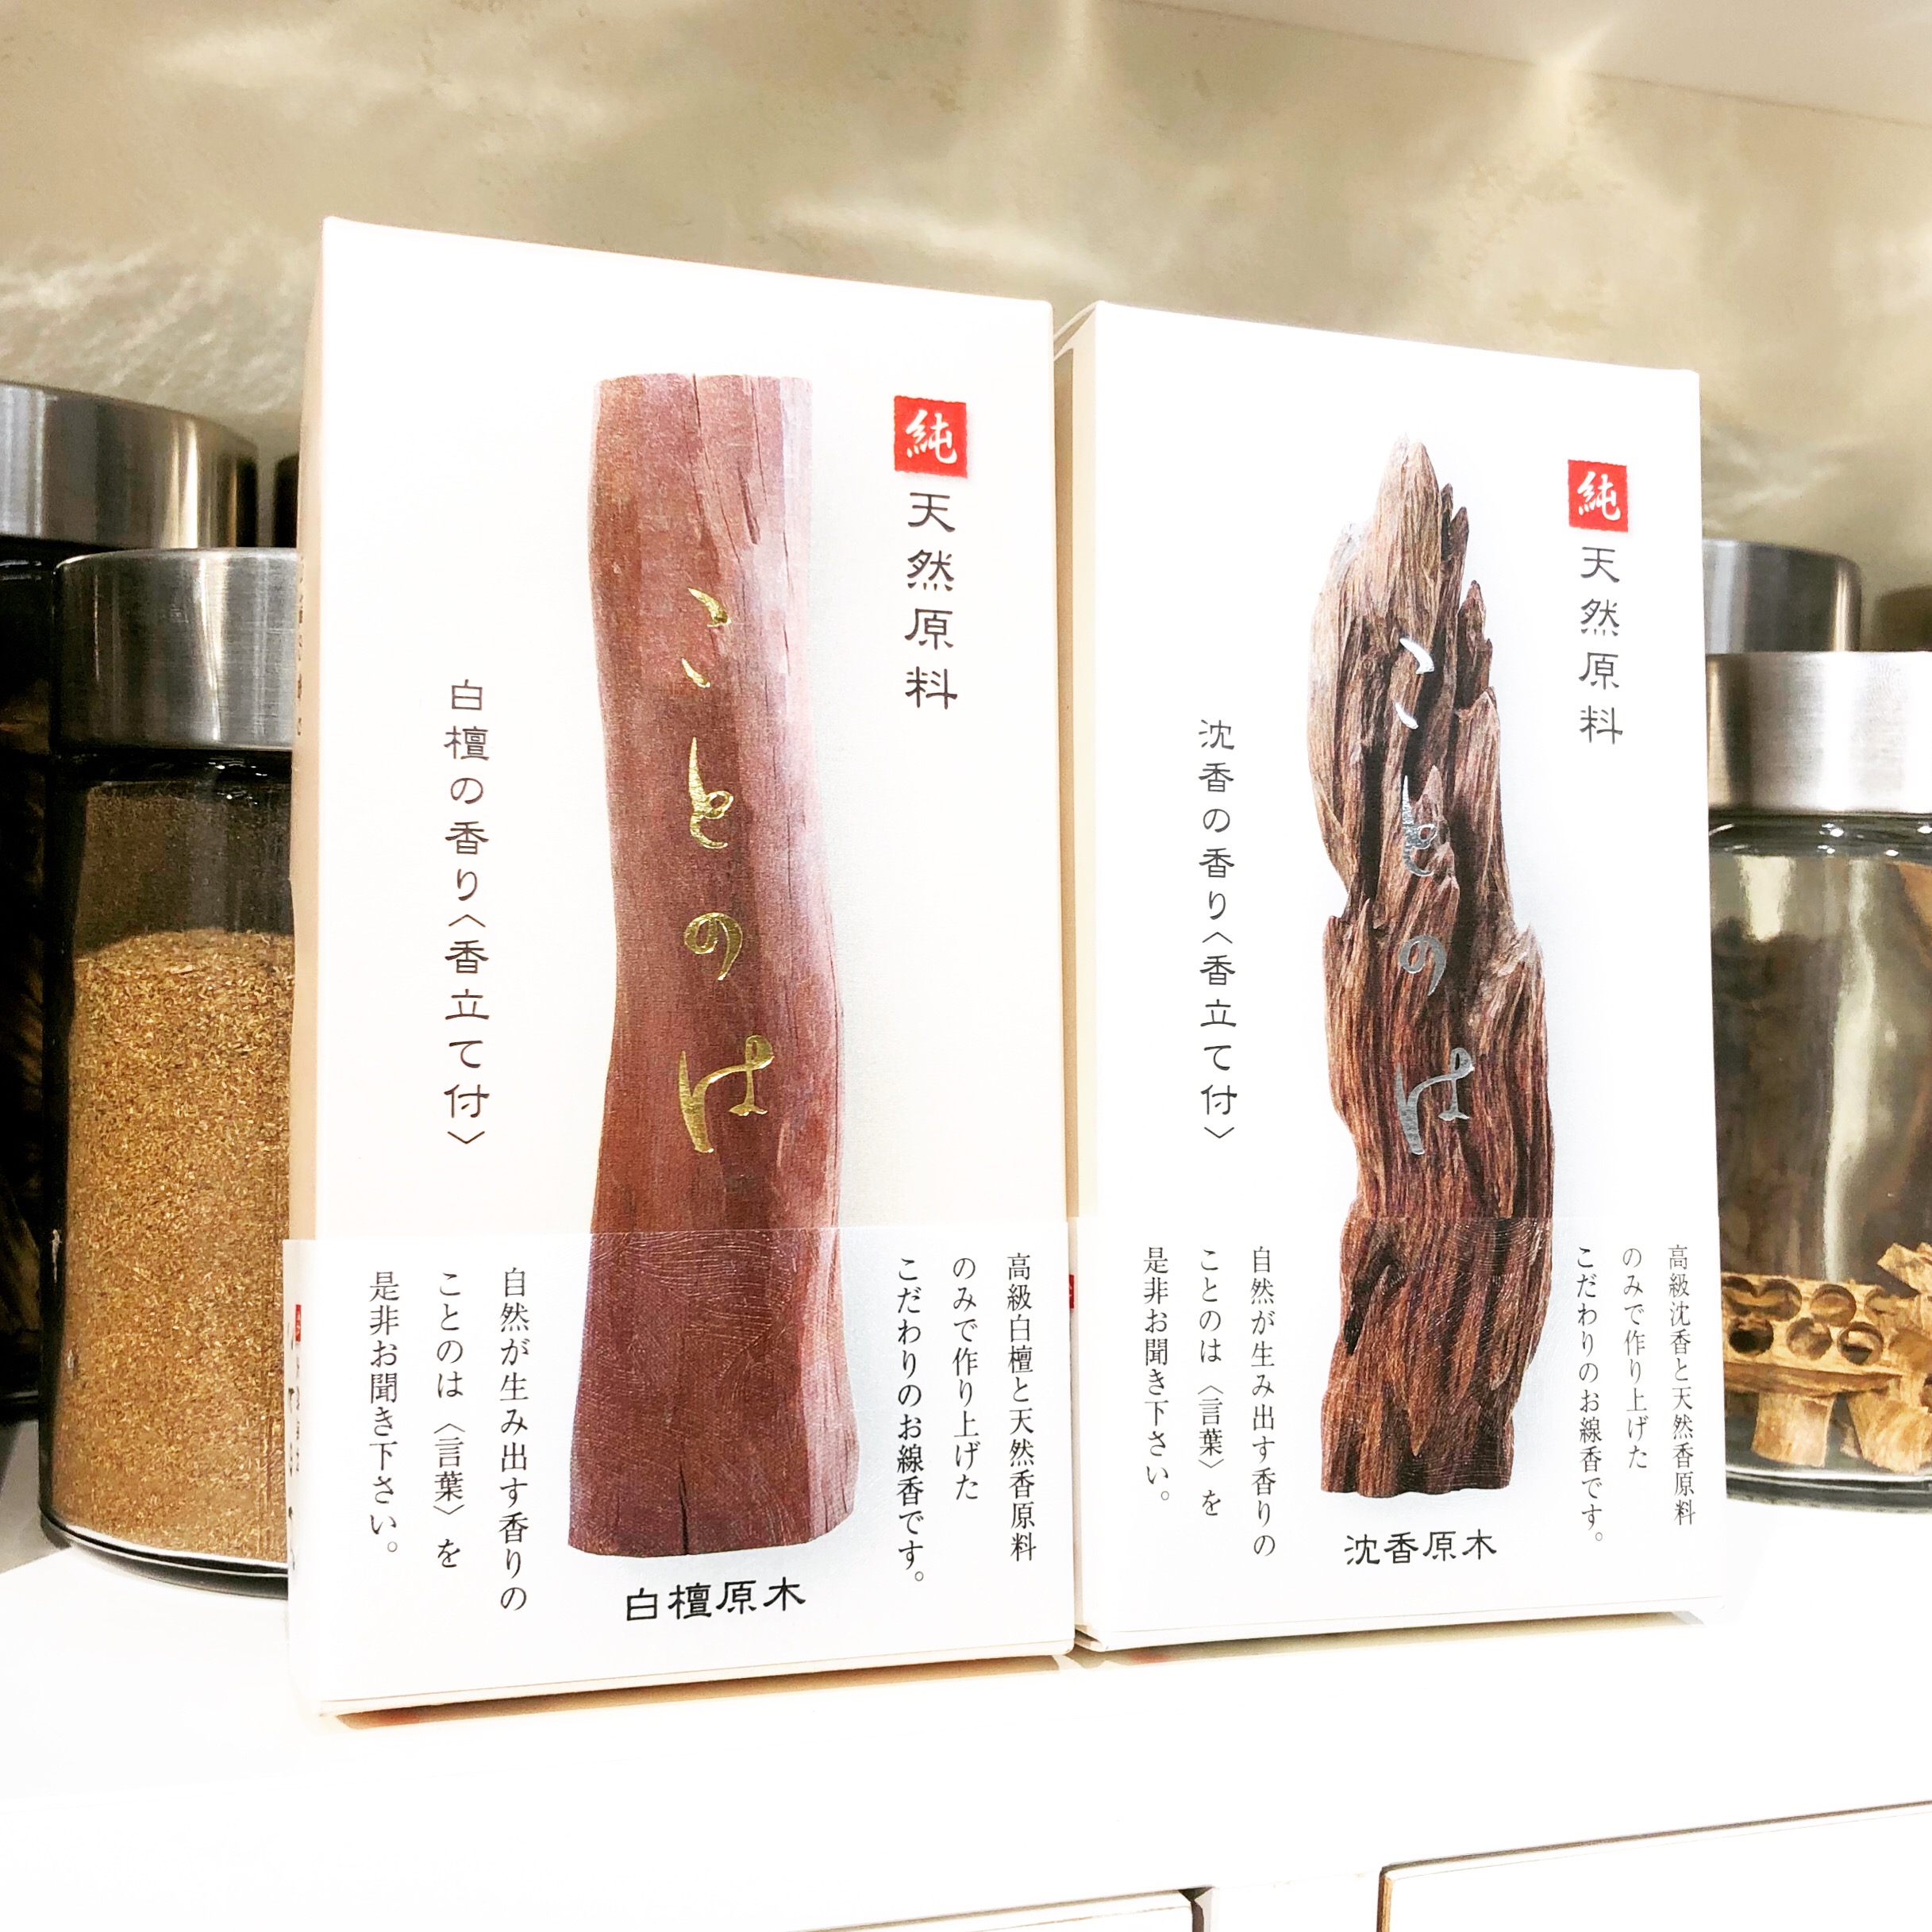 【香源 上野桜木店】化合物は一切使用していない、天然100%のお香「ことのは」のご紹介です。